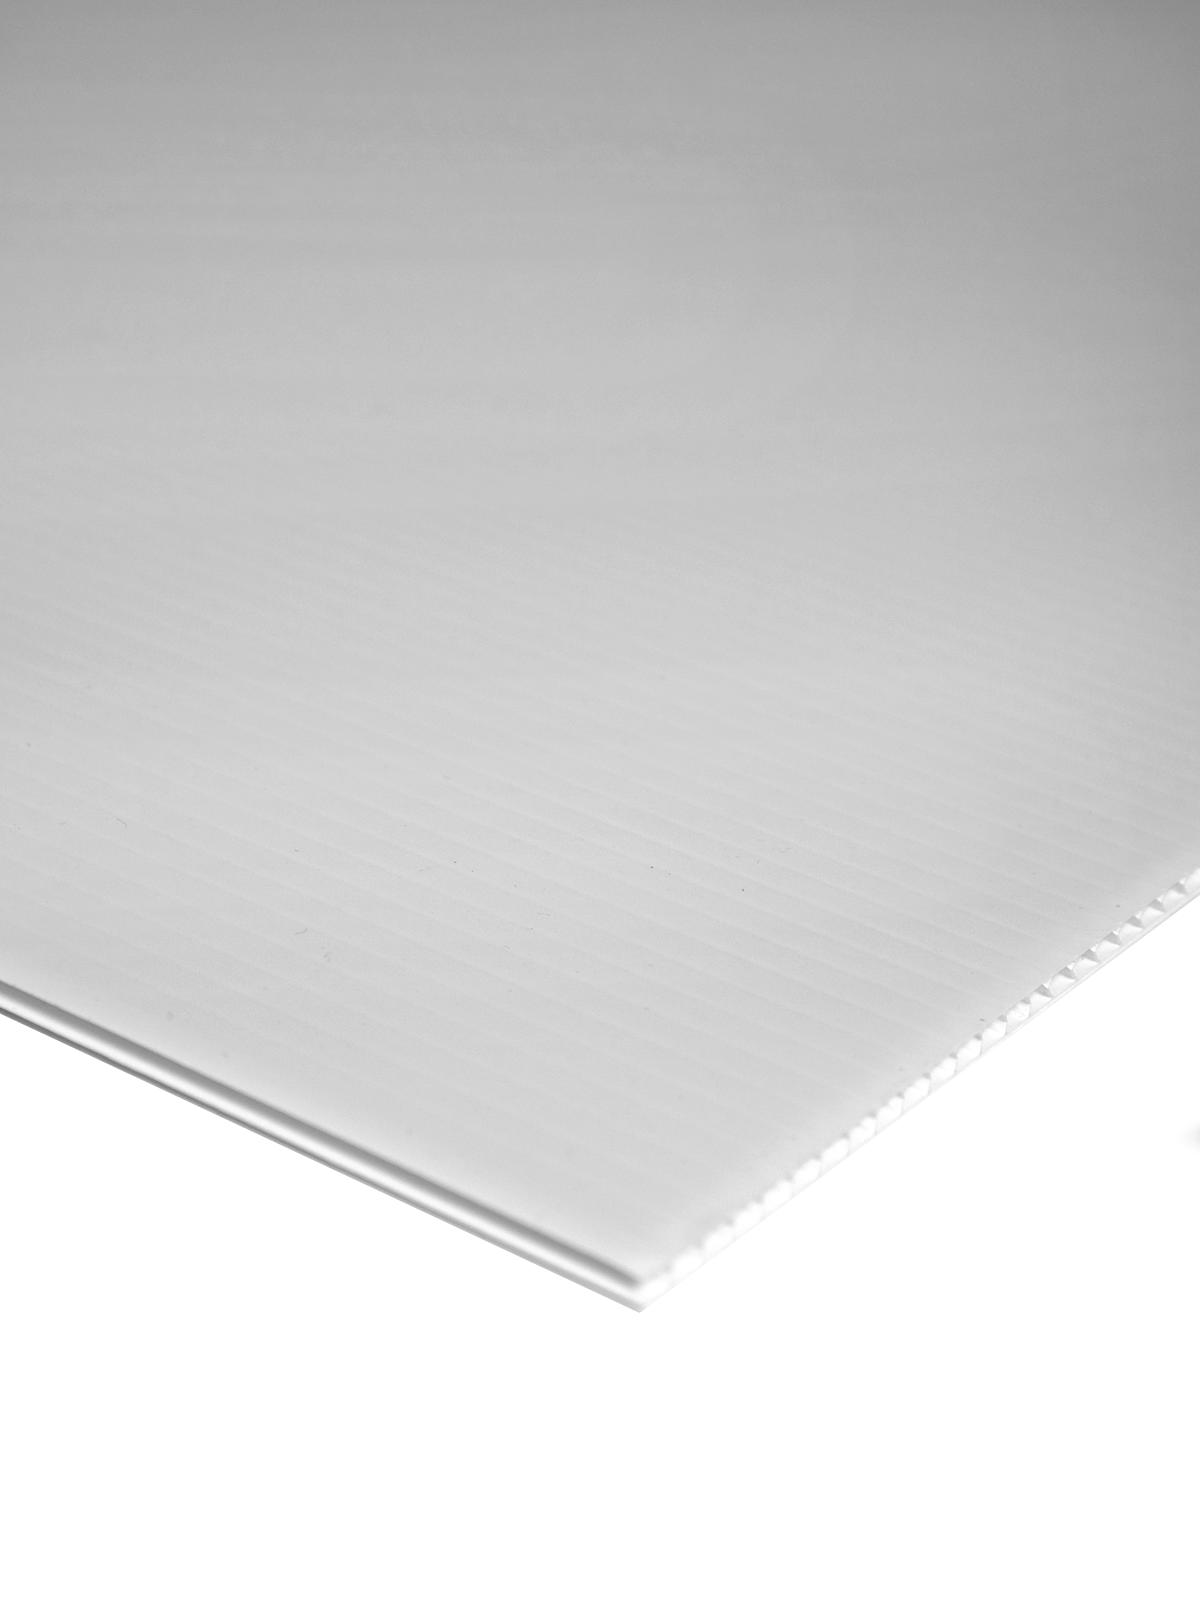 Plasticor Corrugated Boards White 48 In. X 96 In.